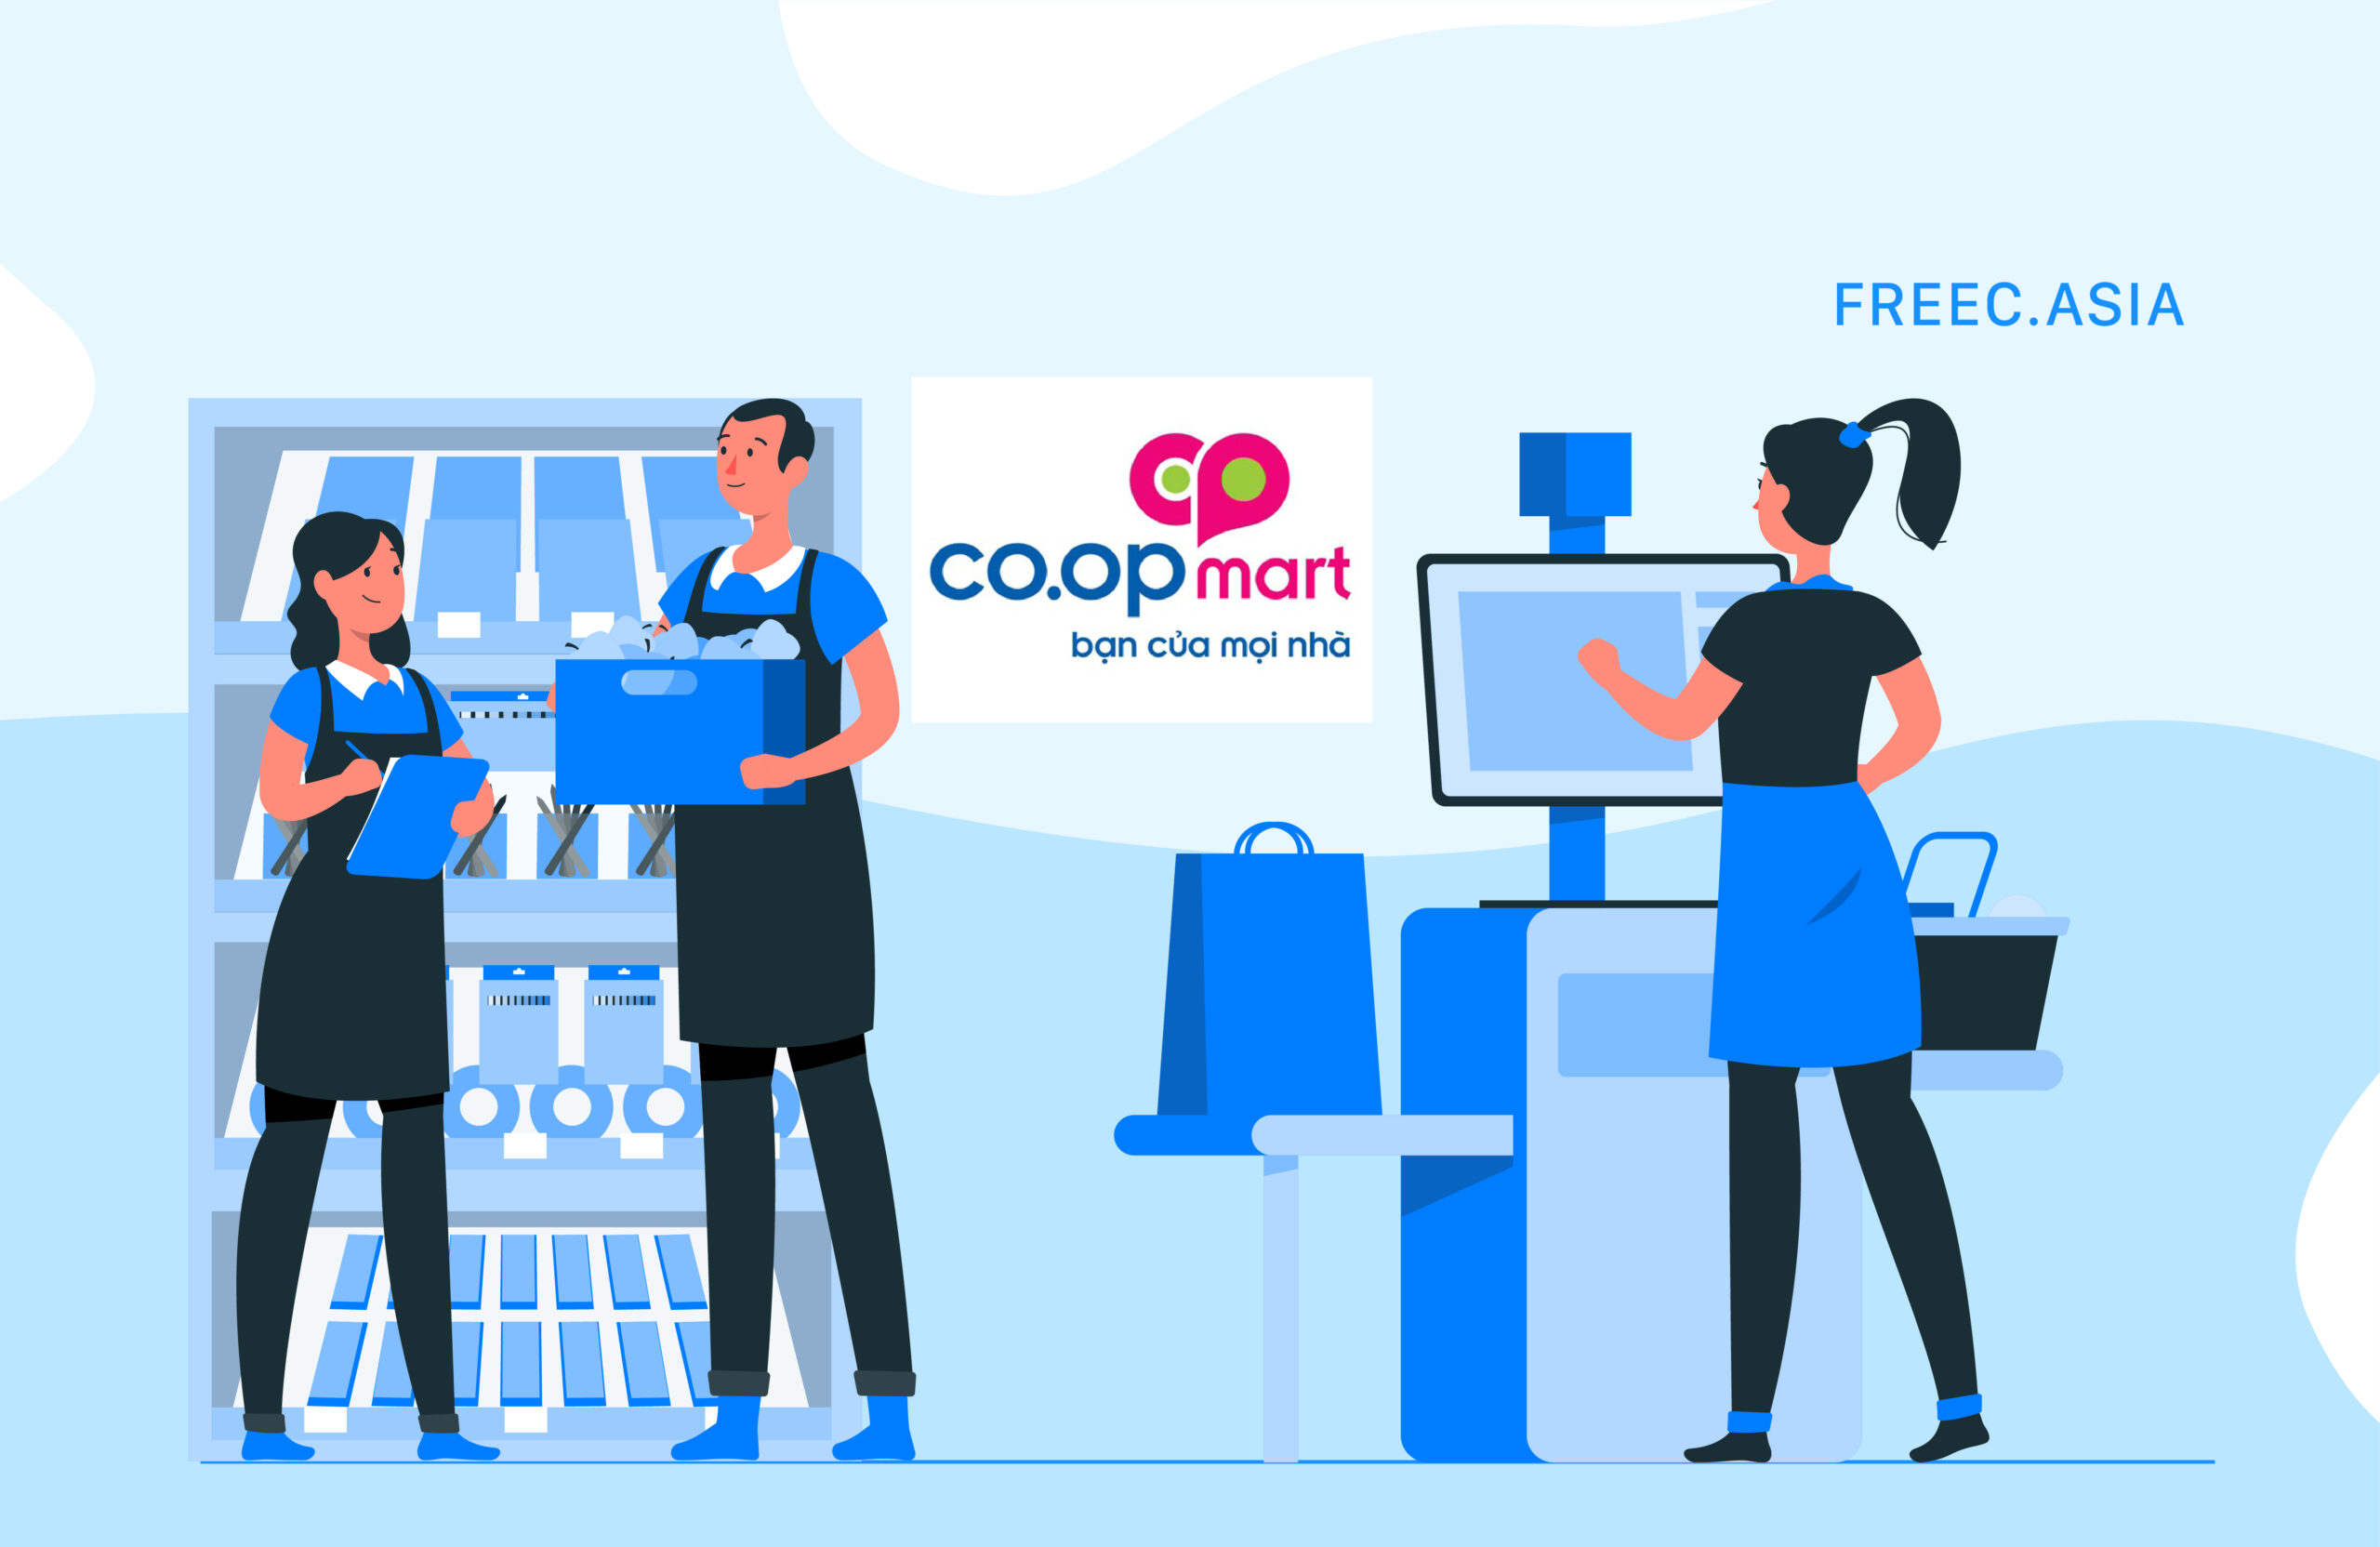 Coopmart tuyển dụng - Kinh nghiệm ứng tuyển thành công ...